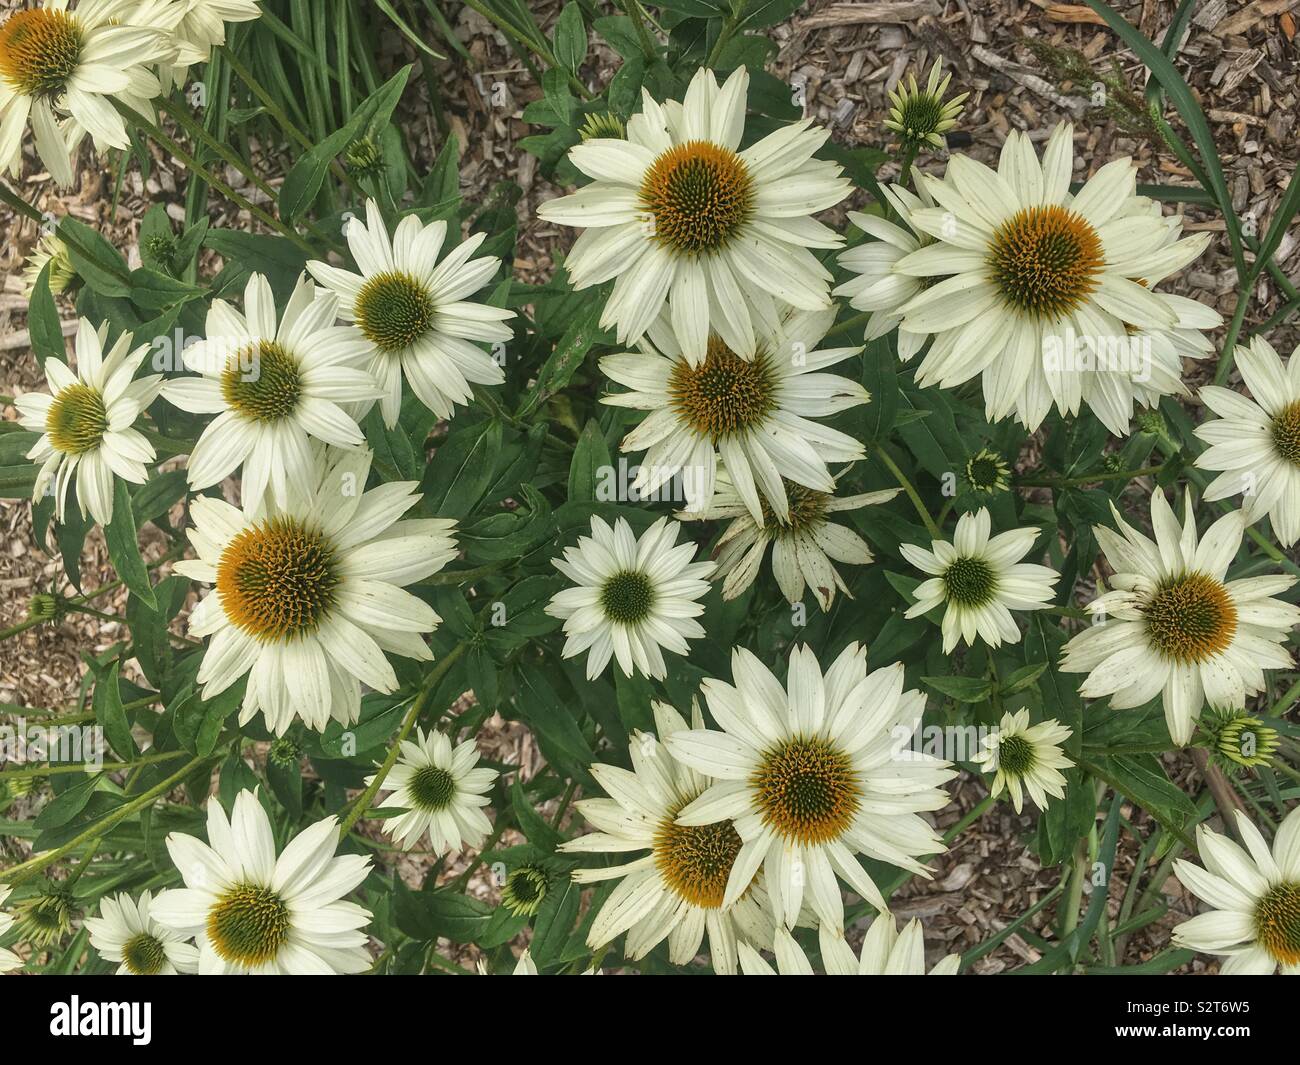 Schöne weiße Blumen, Echinacea purpurea, Ost Sonnenhut, Igel coneflower oder Sonnenhut. Stockfoto